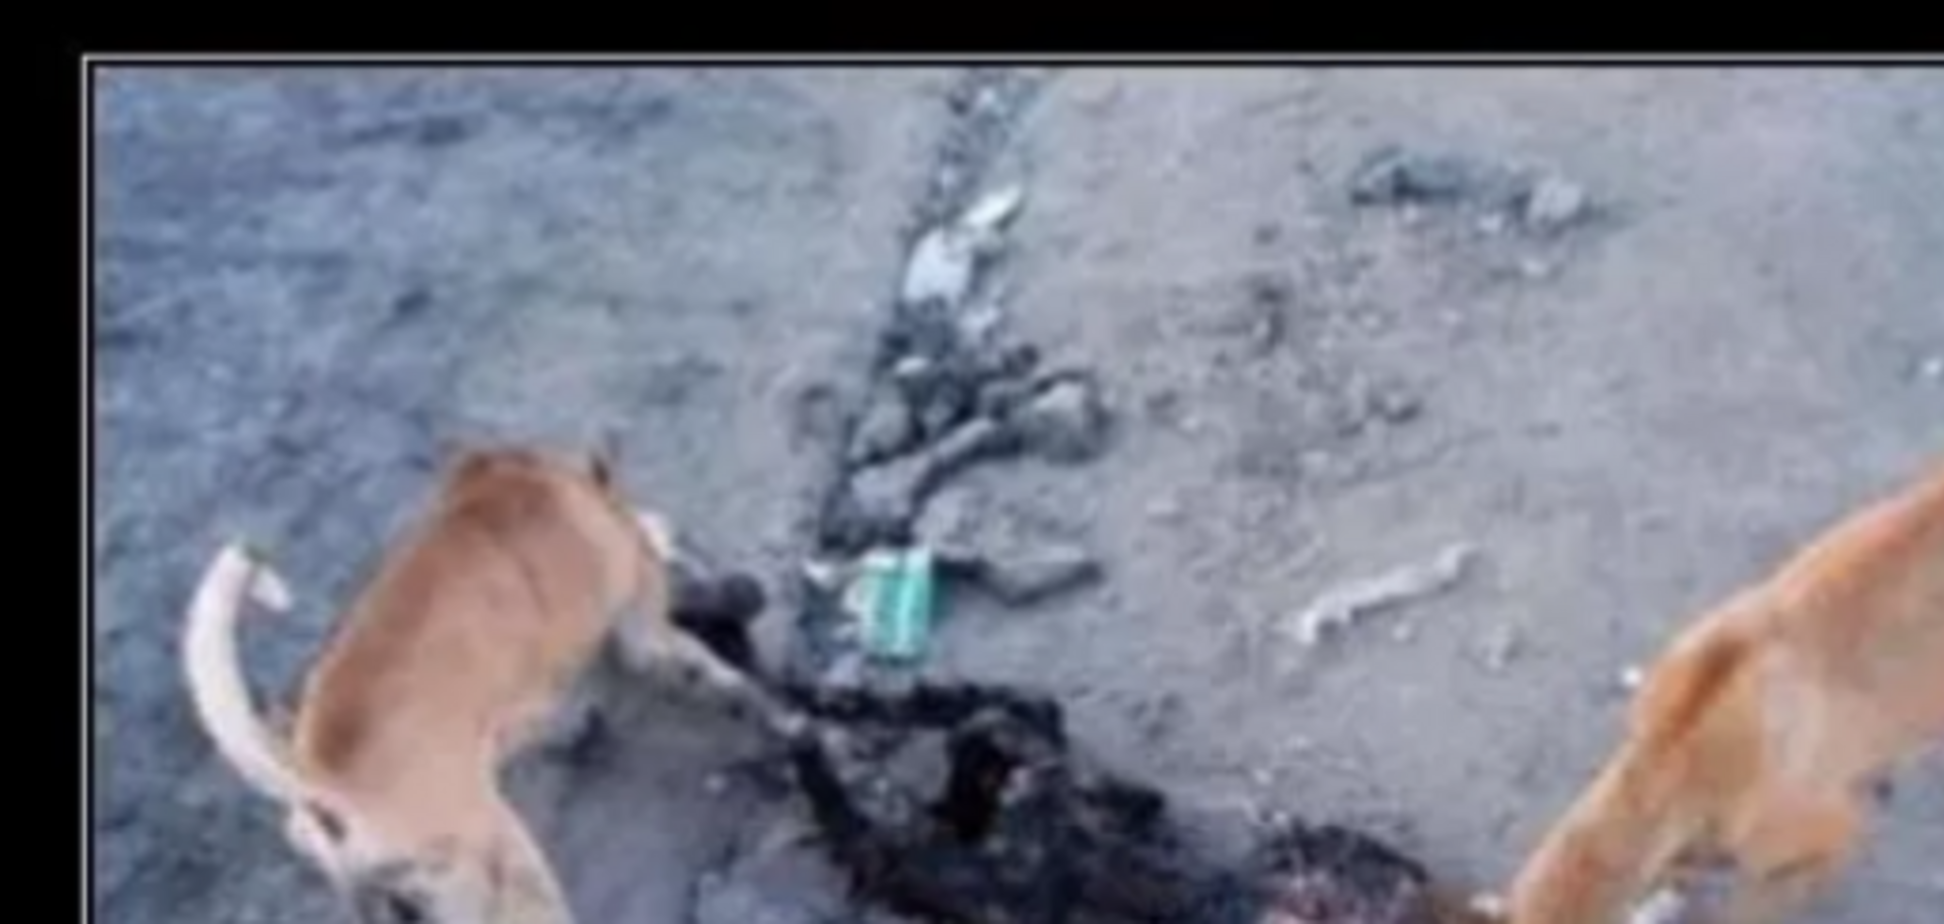 Фото, где собаки обгладывают кости нацгвардейца под Луганском, оказалось фейком